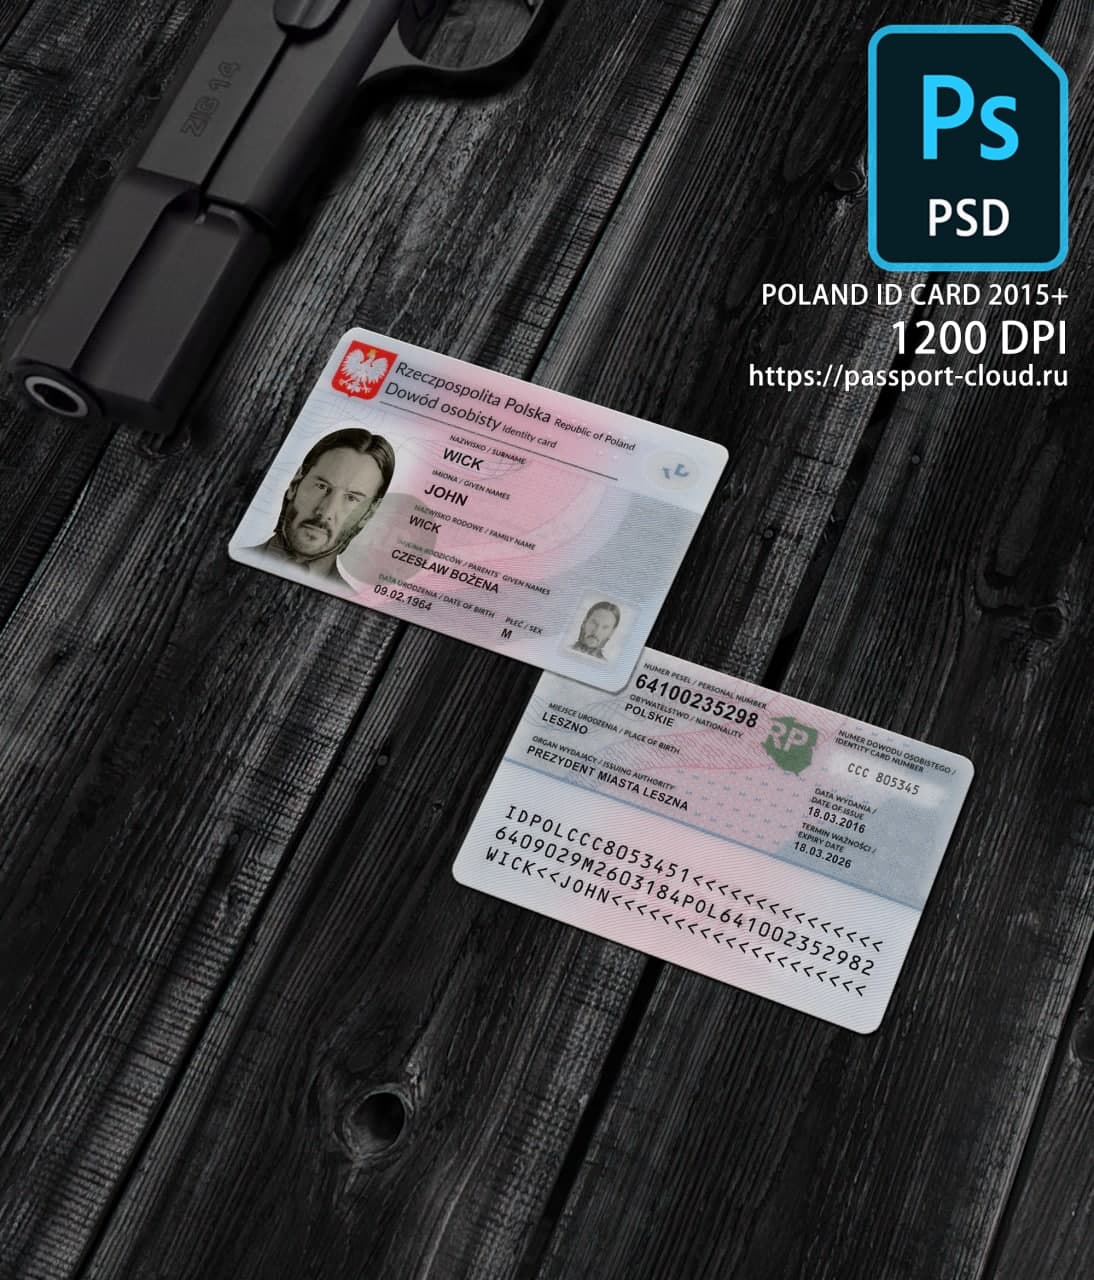 Poland ID Card 2015+ PSD1